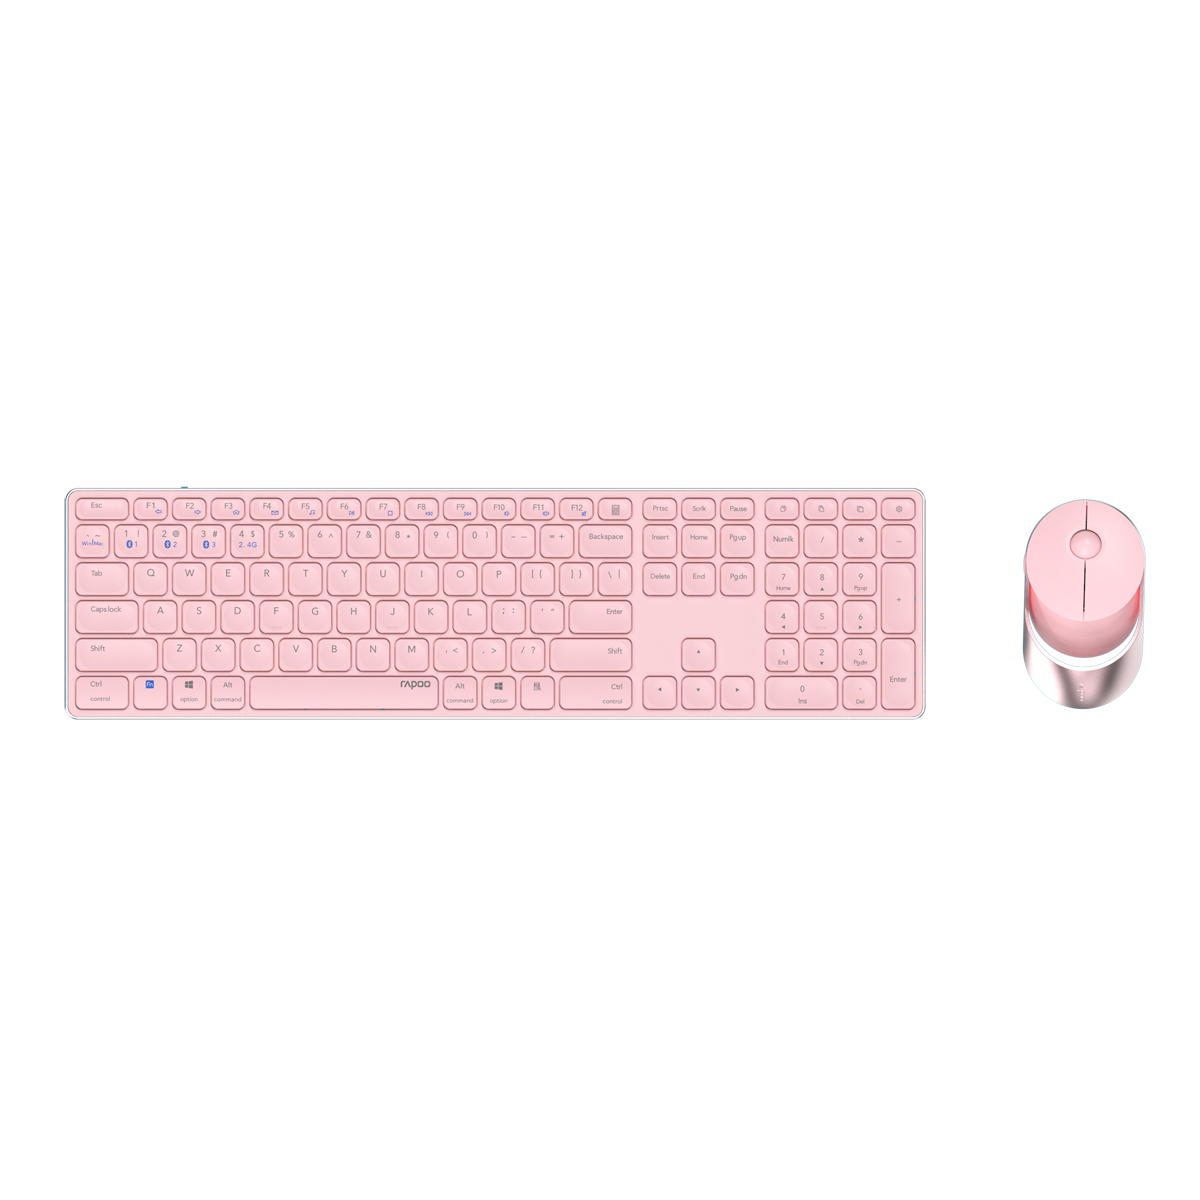 Rapoo Kabelloses Multi-Mode-Deskset "9850M" - pink - QWERTZ (deutsches)-Layout von Rapoo